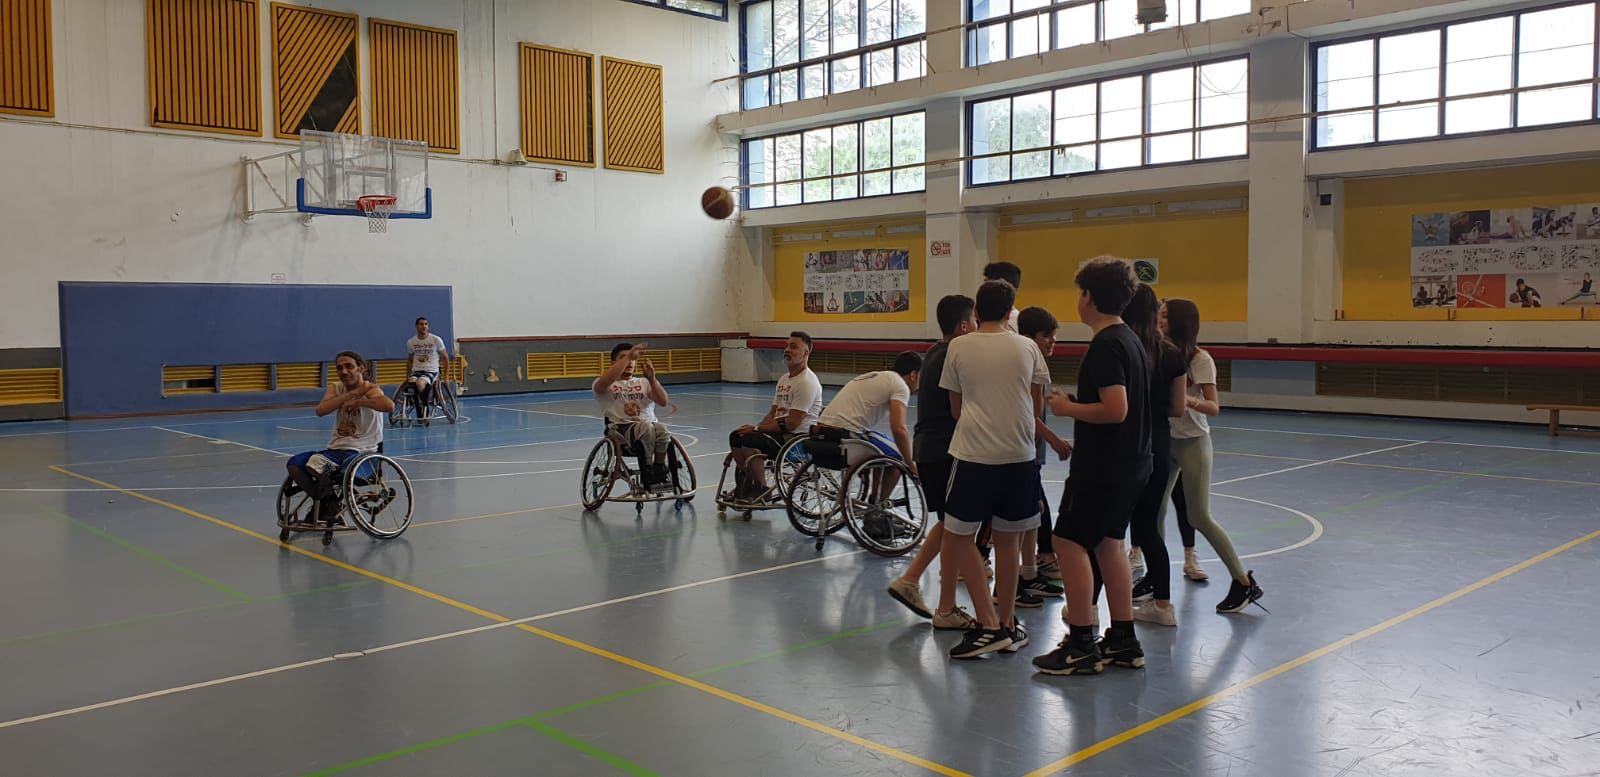 מפגש ייחודי בין תלמידי חטיבת הביינים רמון לבין שחקני כדורסל על גלגלים. צילום" דוברות עיריית כפר סבא